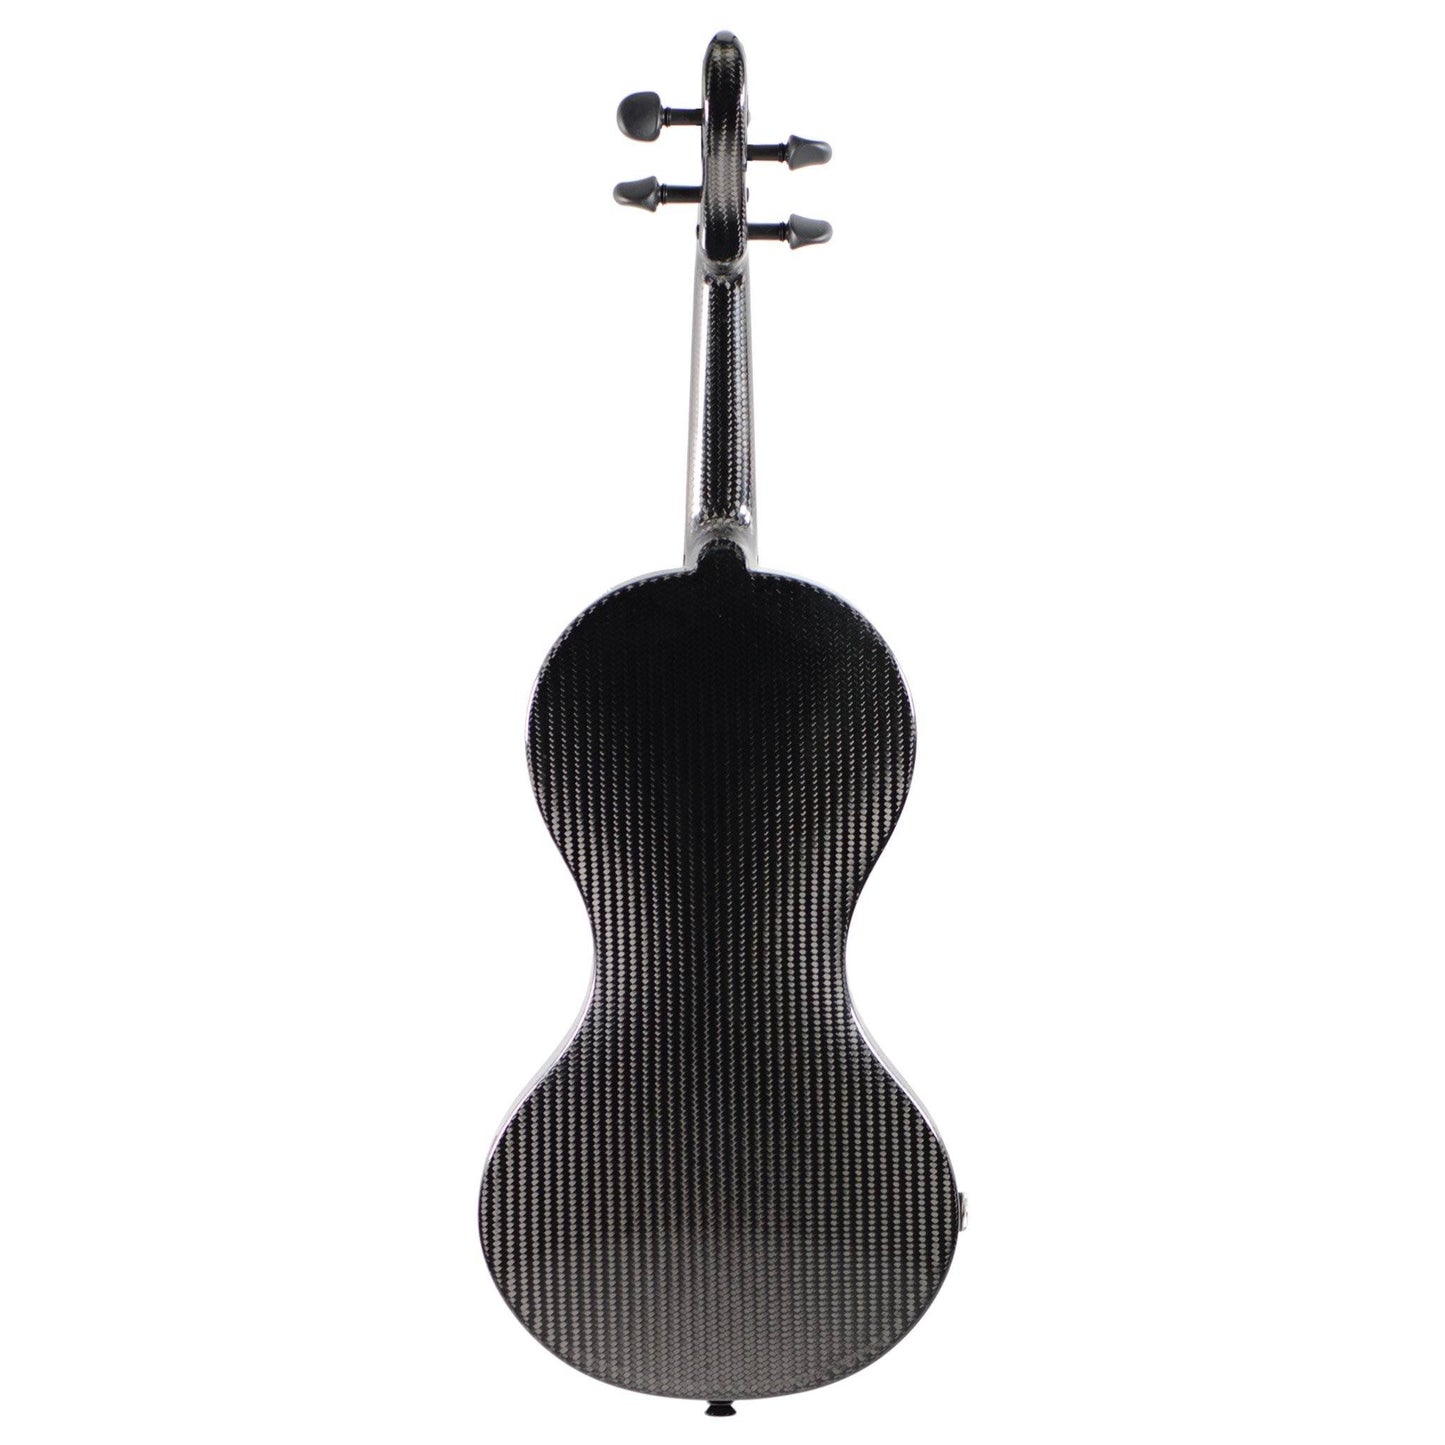 Deal: Carbon violin "Evo Line" model 2019